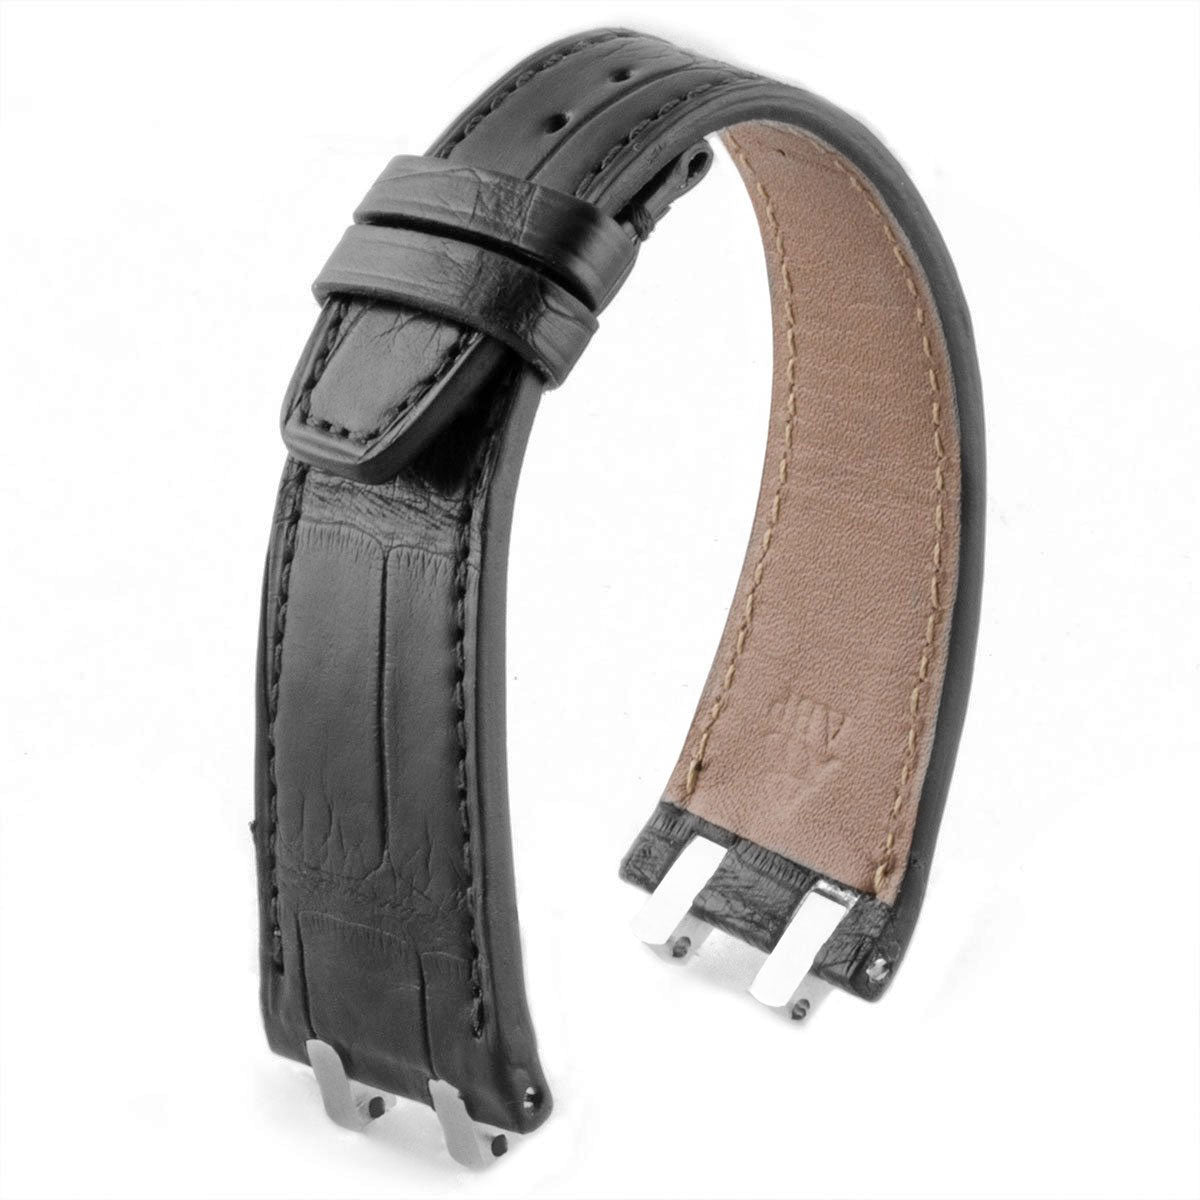 Audemars Piguet Royal Oak classique / Offshore / vintage - Bracelet-montre cuir - Alligator (noir / marron / gris / bleu) - watch band leather strap - ABP Concept -